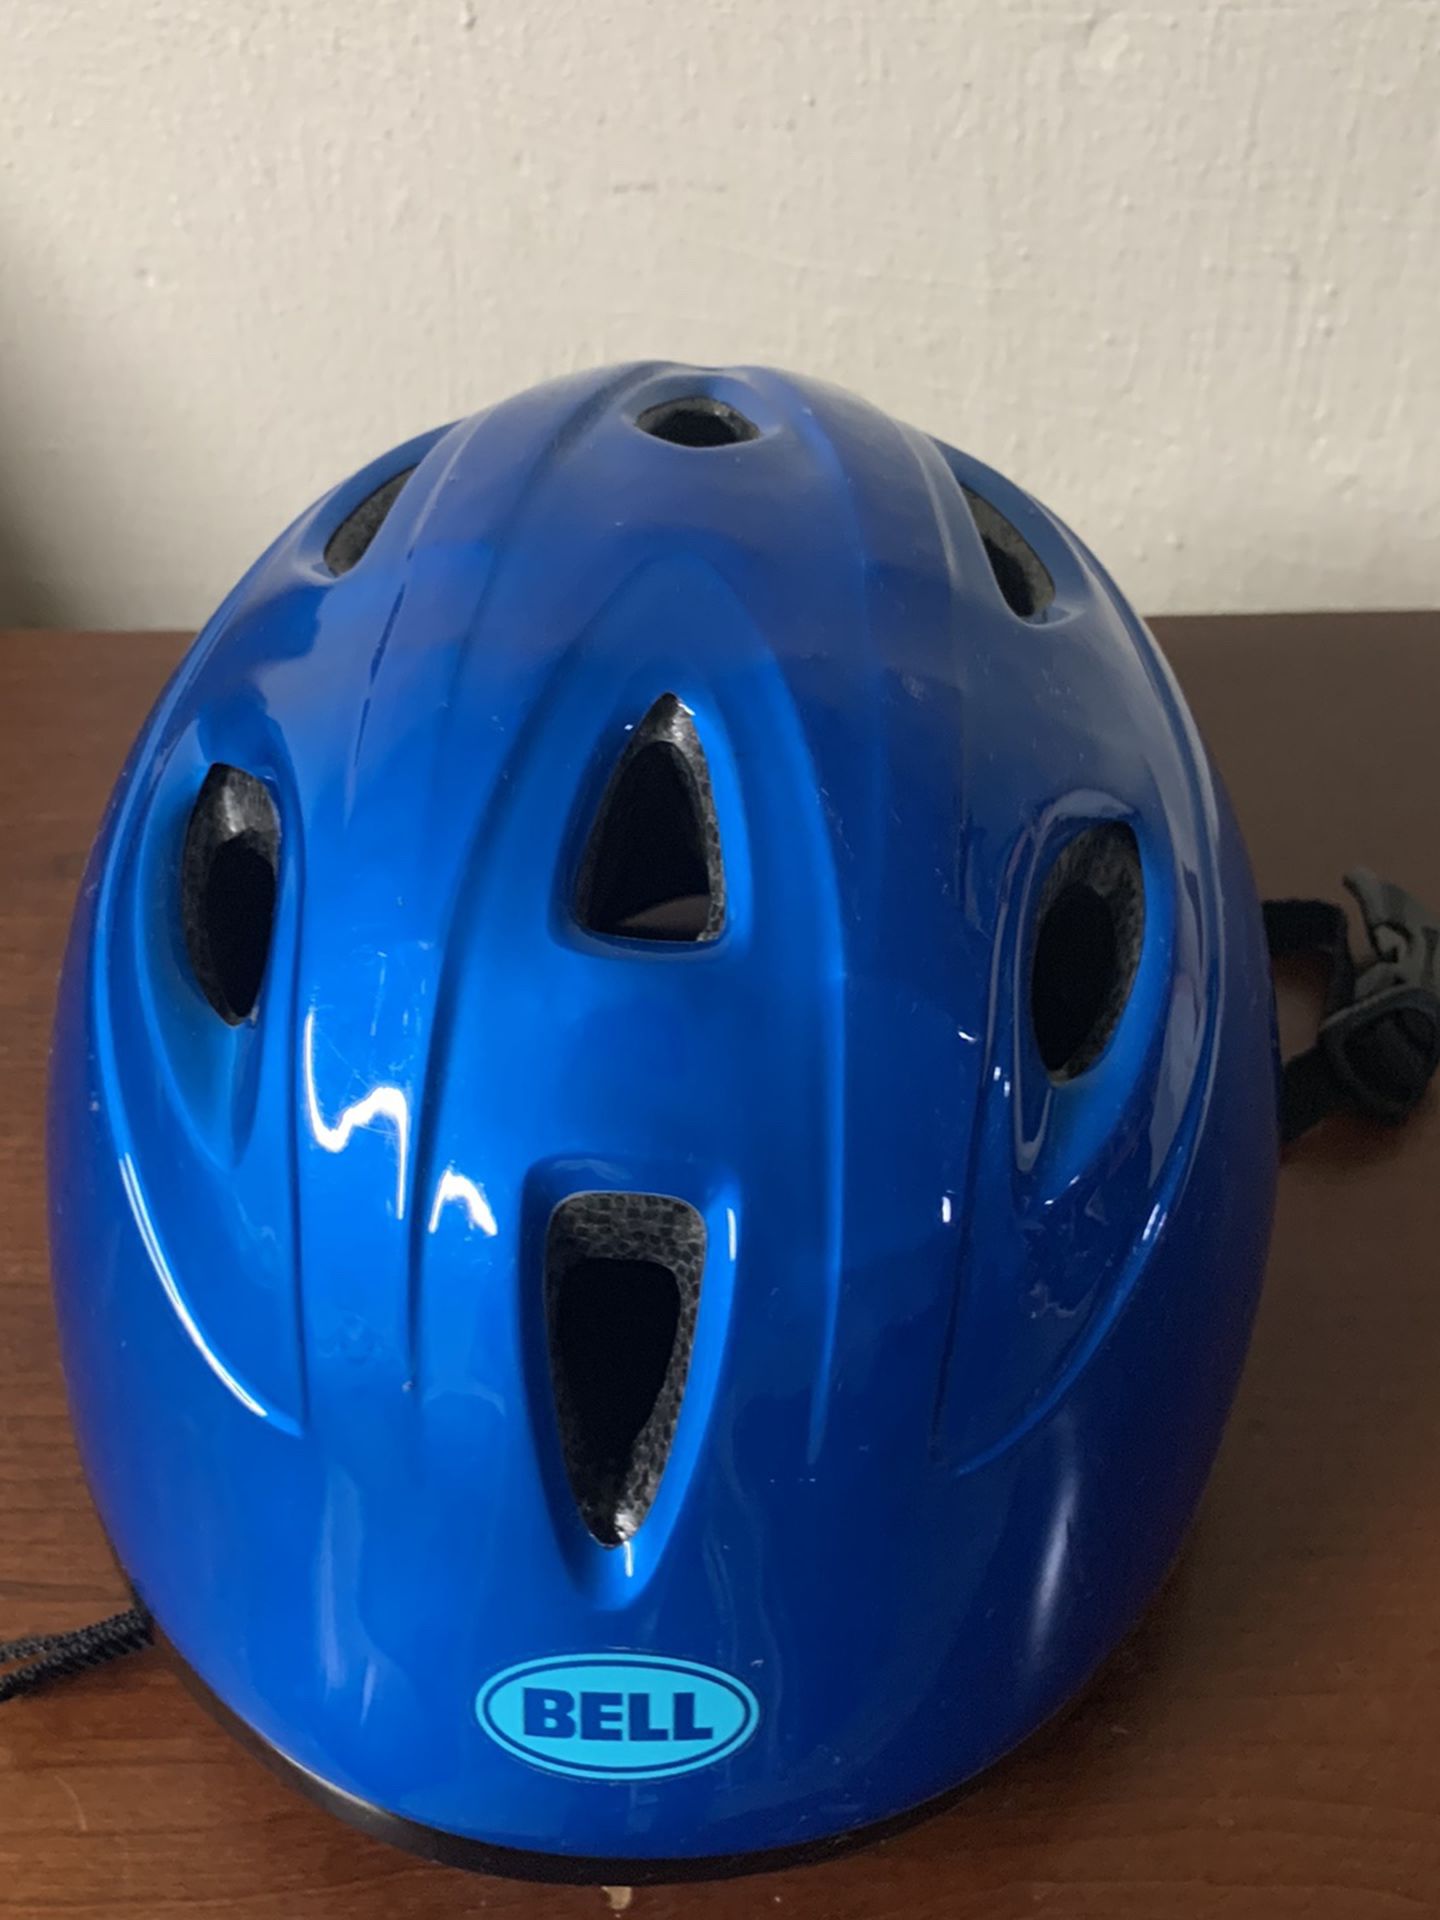 Bell Toddler Bicycle Helmet